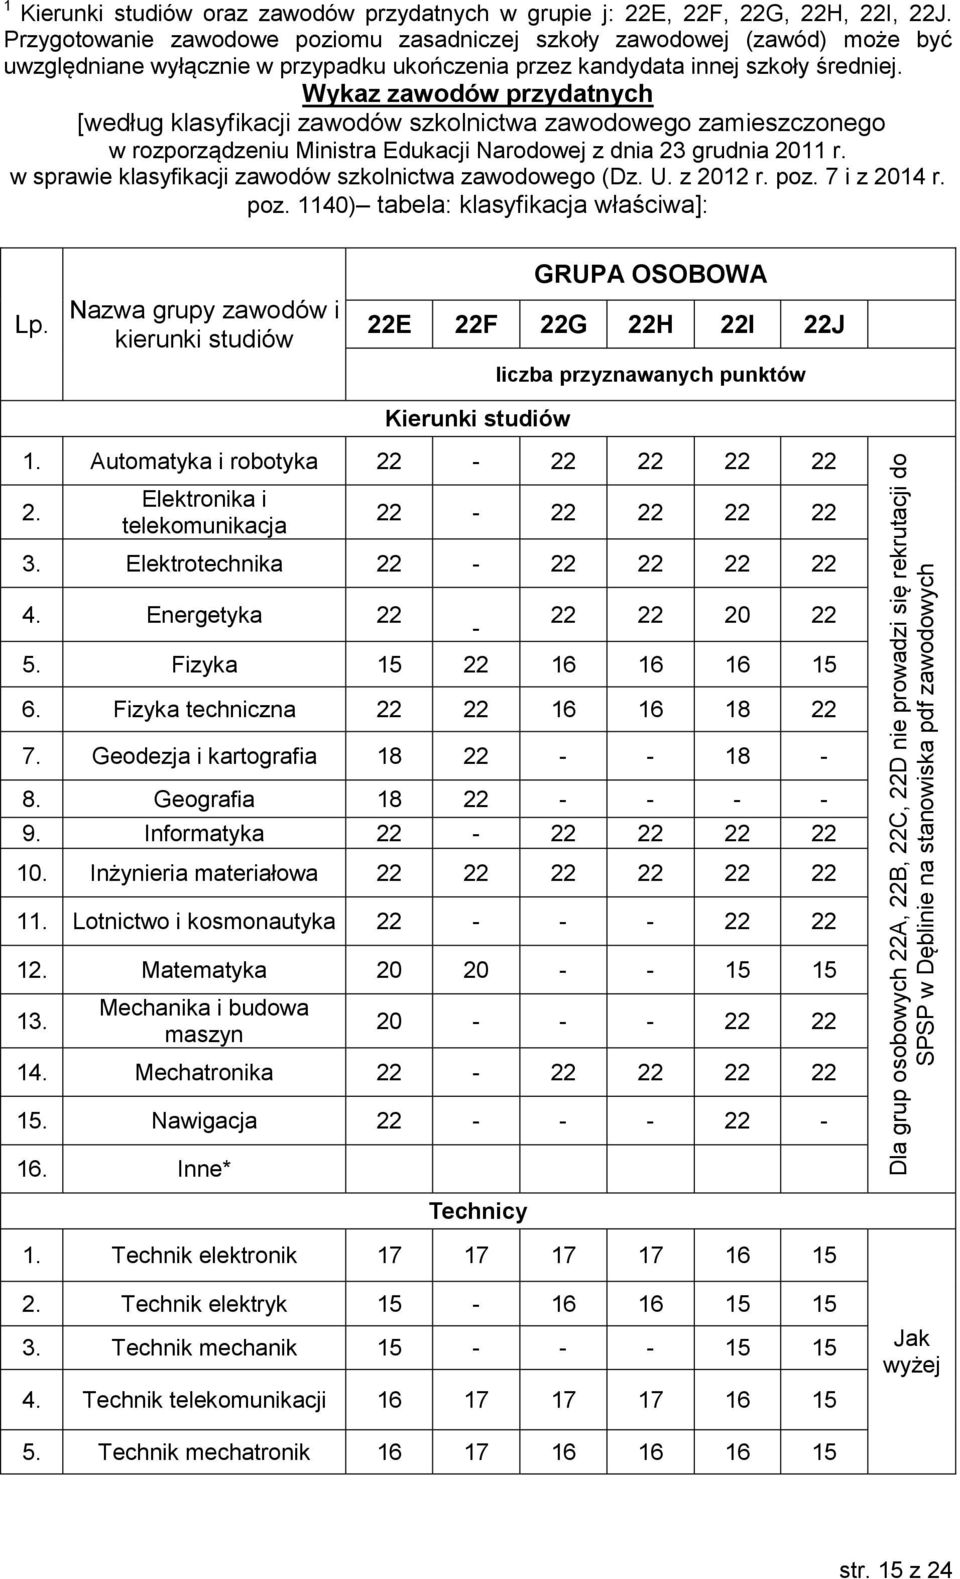 Wykaz zawodów przydatnych [według klasyfikacji zawodów szkolnictwa zawodowego zamieszczonego w rozporządzeniu Ministra Edukacji Narodowej z dnia 23 grudnia 2011 r.